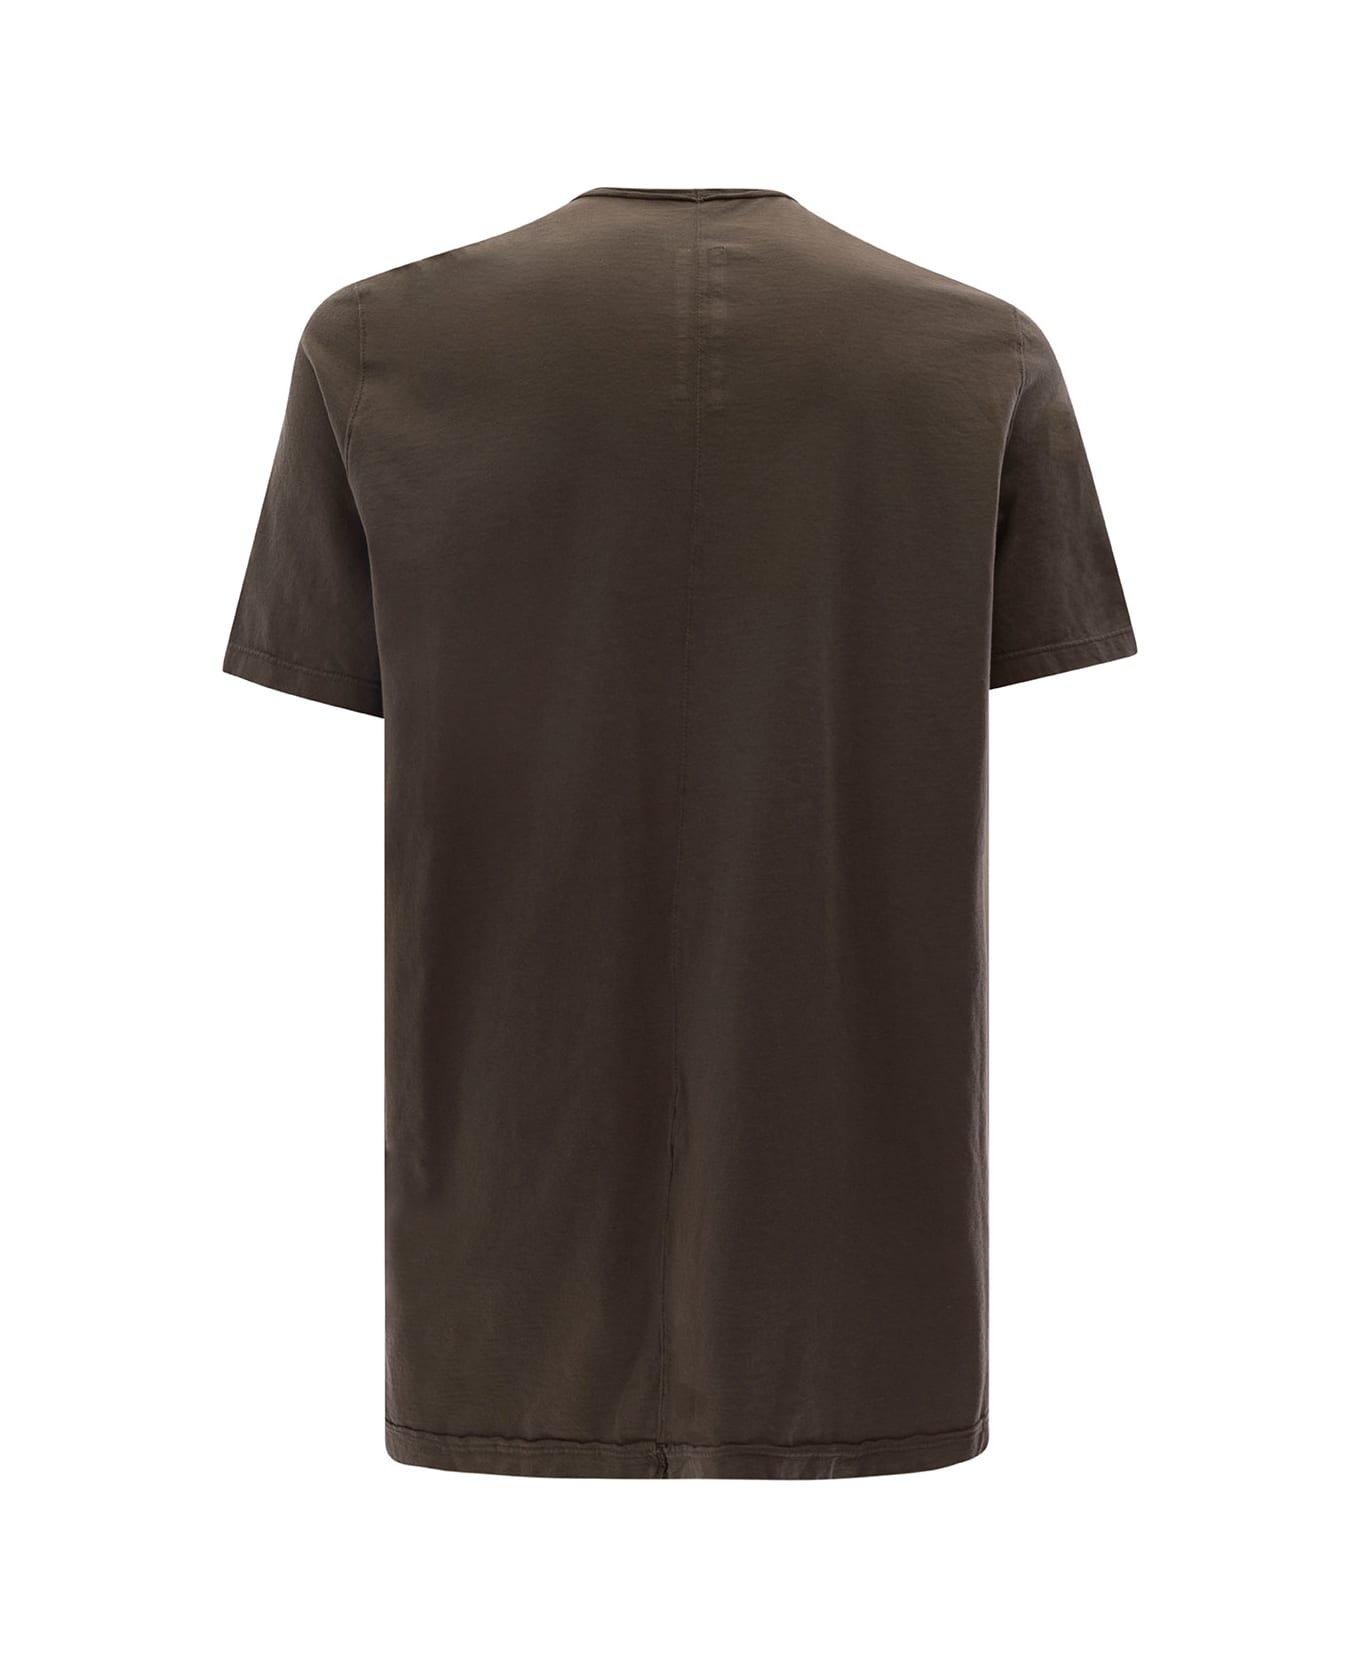 DRKSHDW Brown Round Neck T-shirt In Cotton Man - Brown シャツ